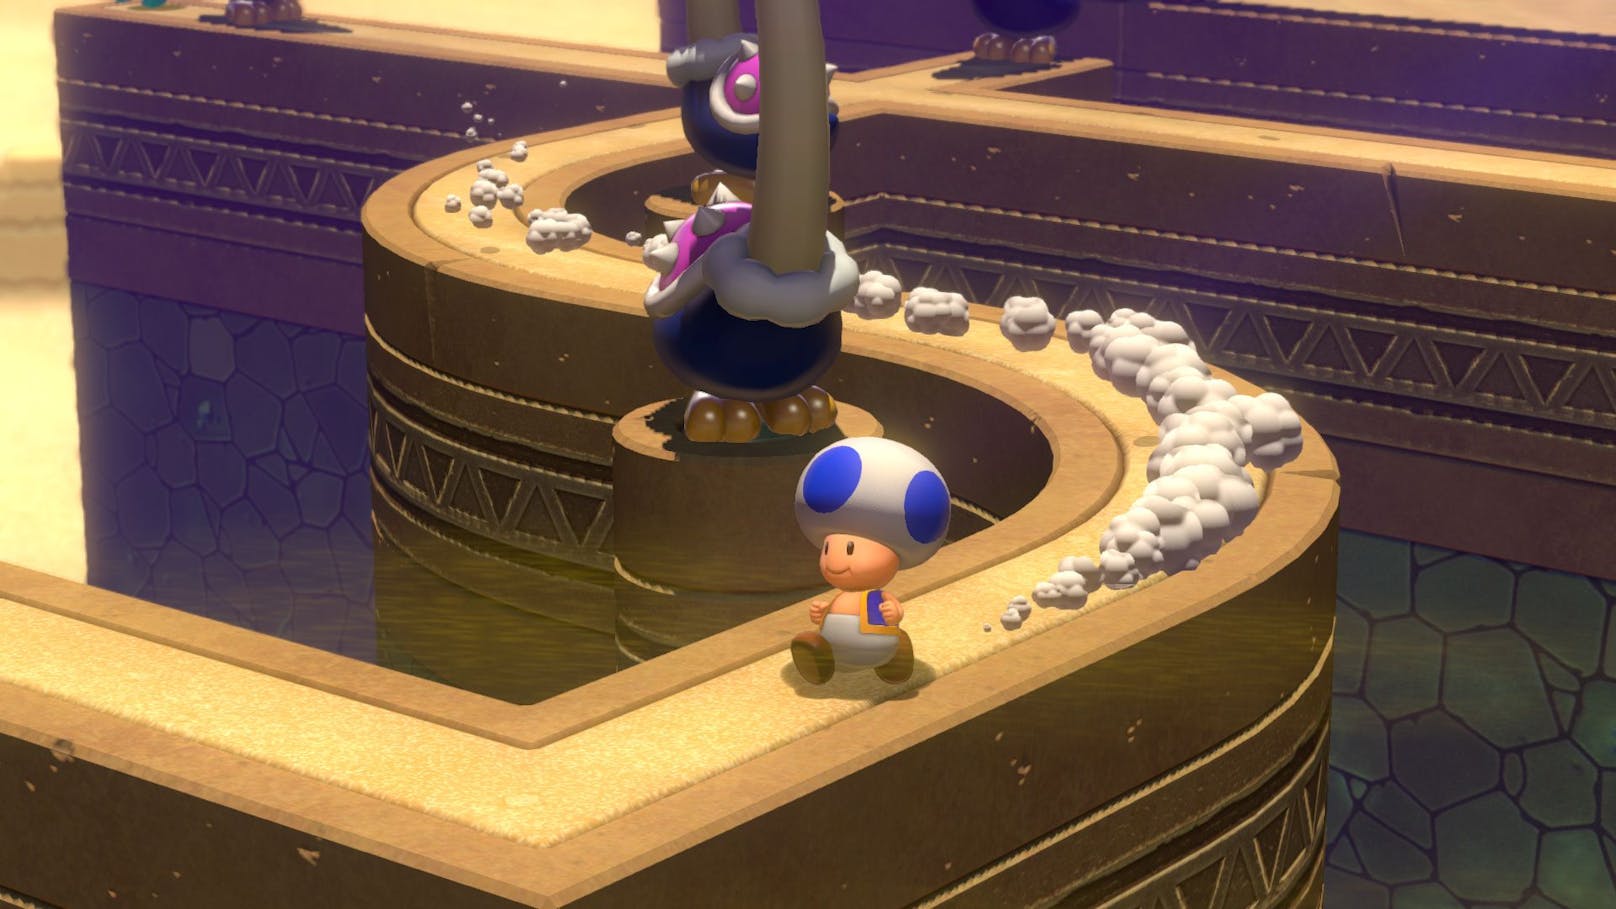 Das Originalspiel "Super Mario 3D World" erschien ursprünglich 2013 für die gescheiterte Wii U – und bot fantastisches Leveldesign sowie viele kreative Ideen.